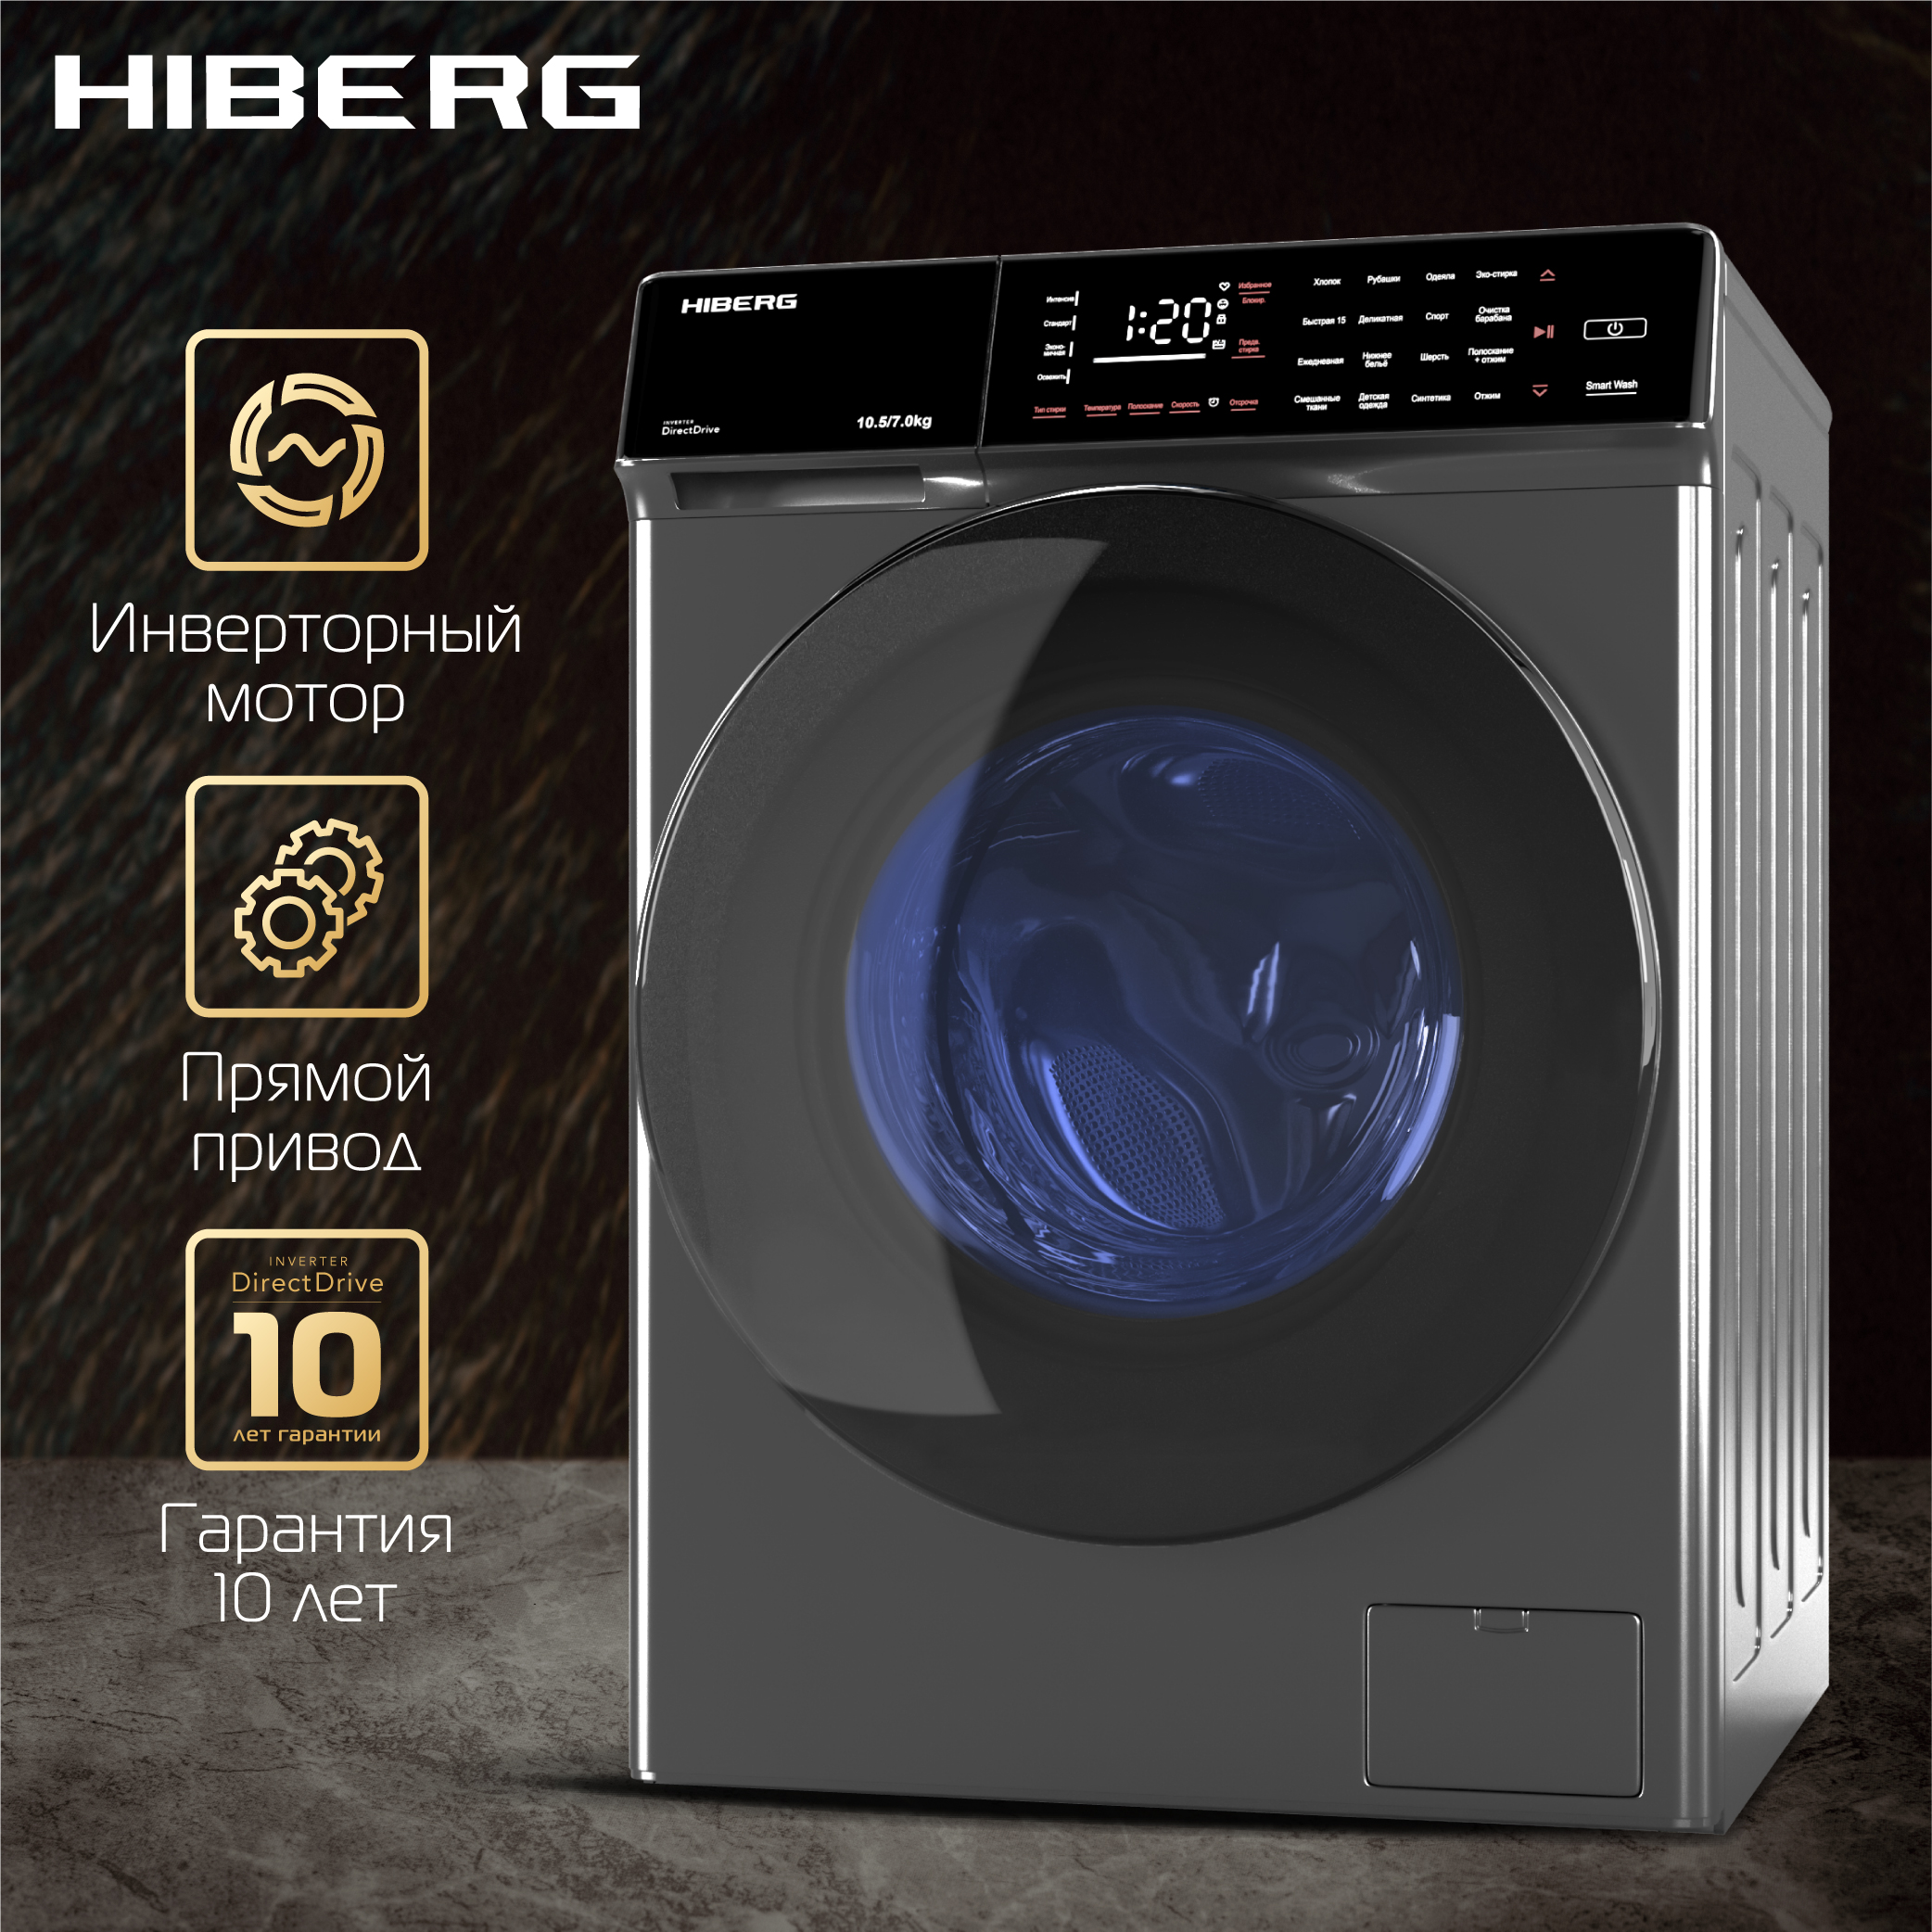 Стиральная машина Hiberg i-DDQ9 - 10714 Sd серебристый стиральная машина hiberg i ddq9 612 w